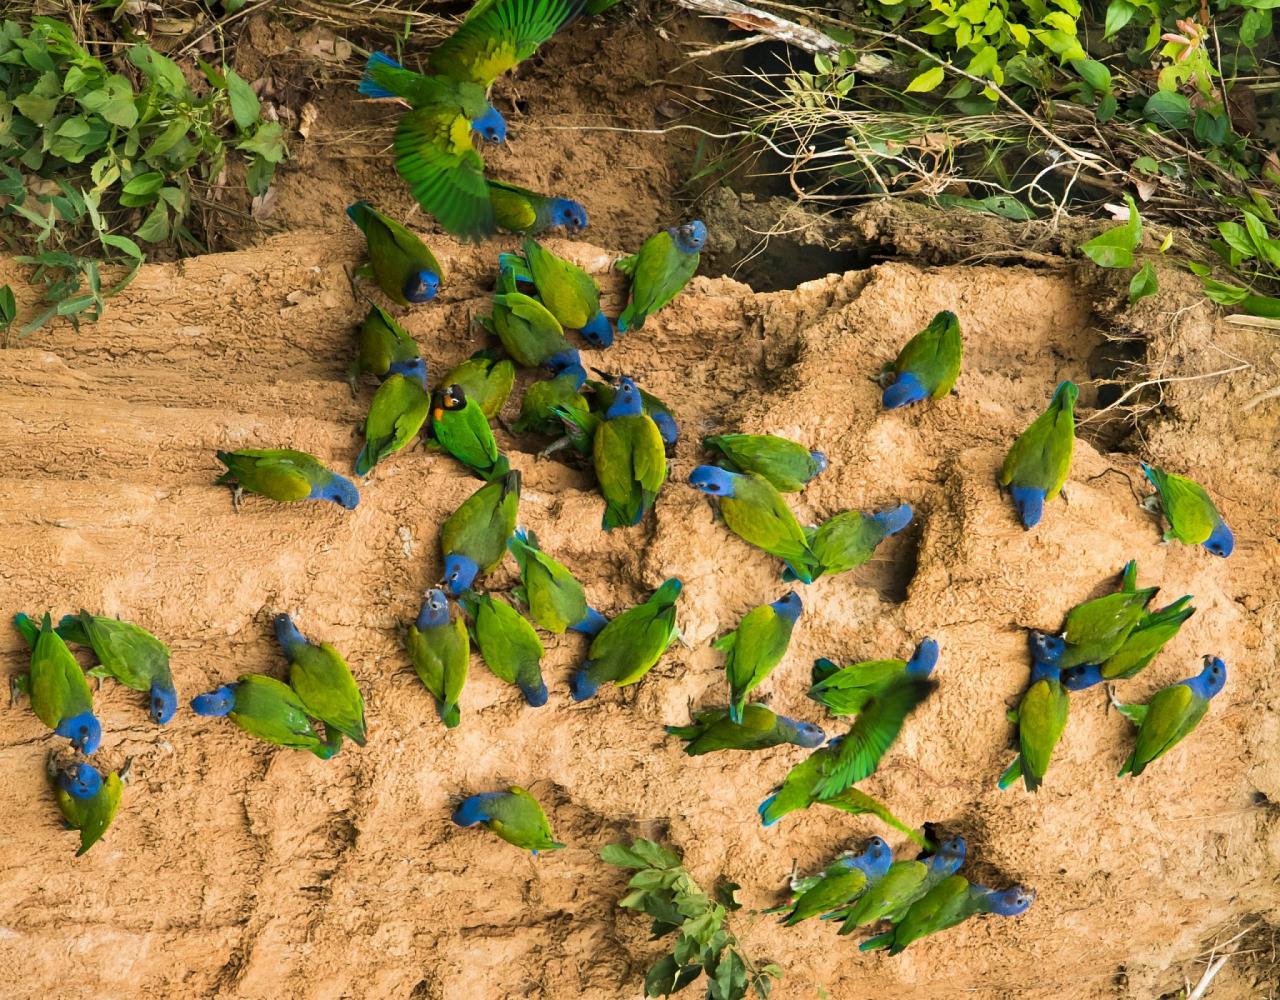 Blue-headed Parrots, Birding Ecuador, Bird watching Ecuador, Ecuador, South American Birds, Naturalist Journeys, Wildlife Tour, Wildlife Photography, Ecotourism, Specialty Birds, Endemic Birds, Birding Hotspot